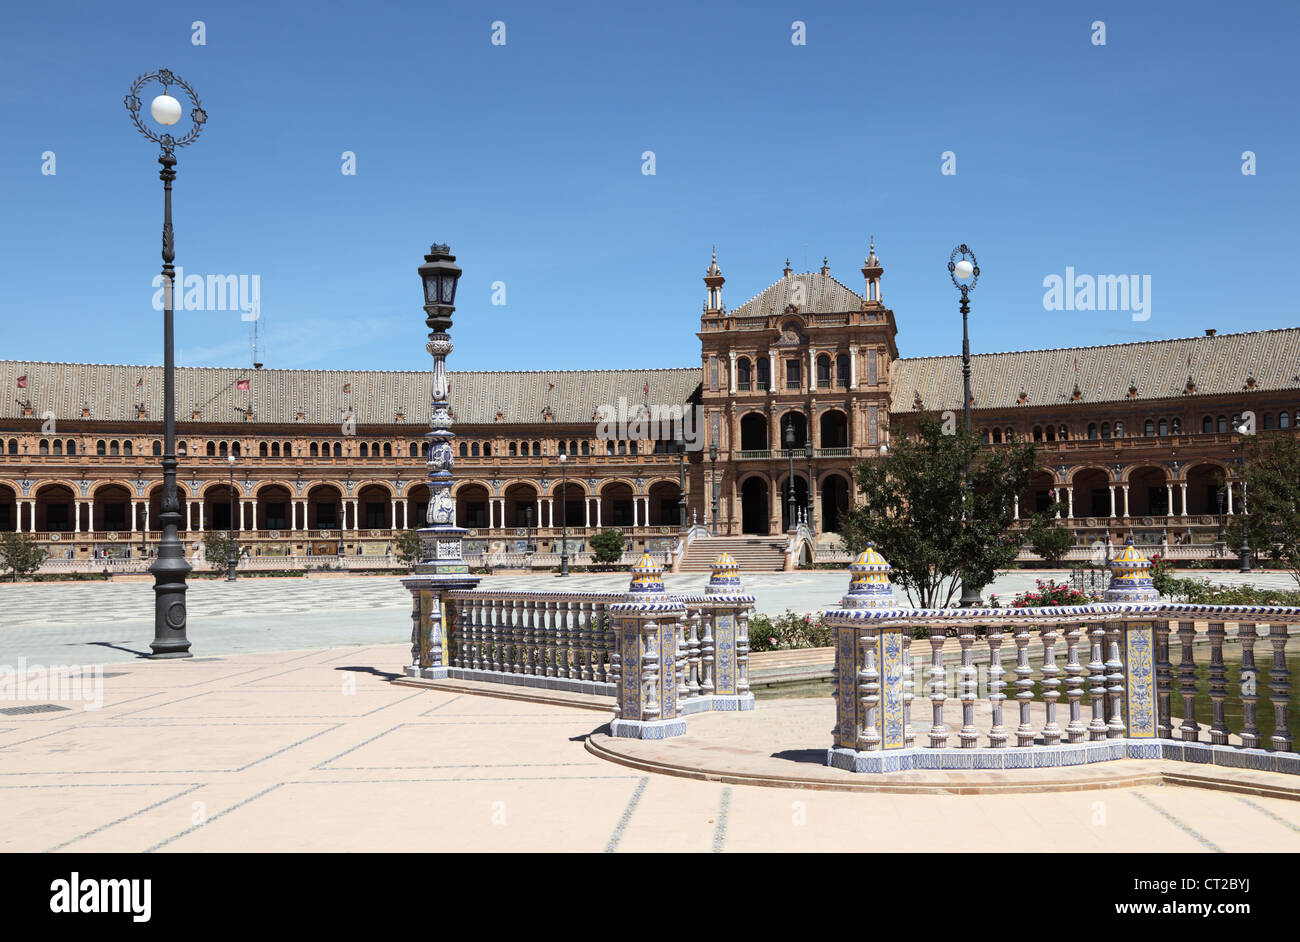 Spanish Square (Plaza de Espana) in Seville, Andalusia Spain Stock Photo